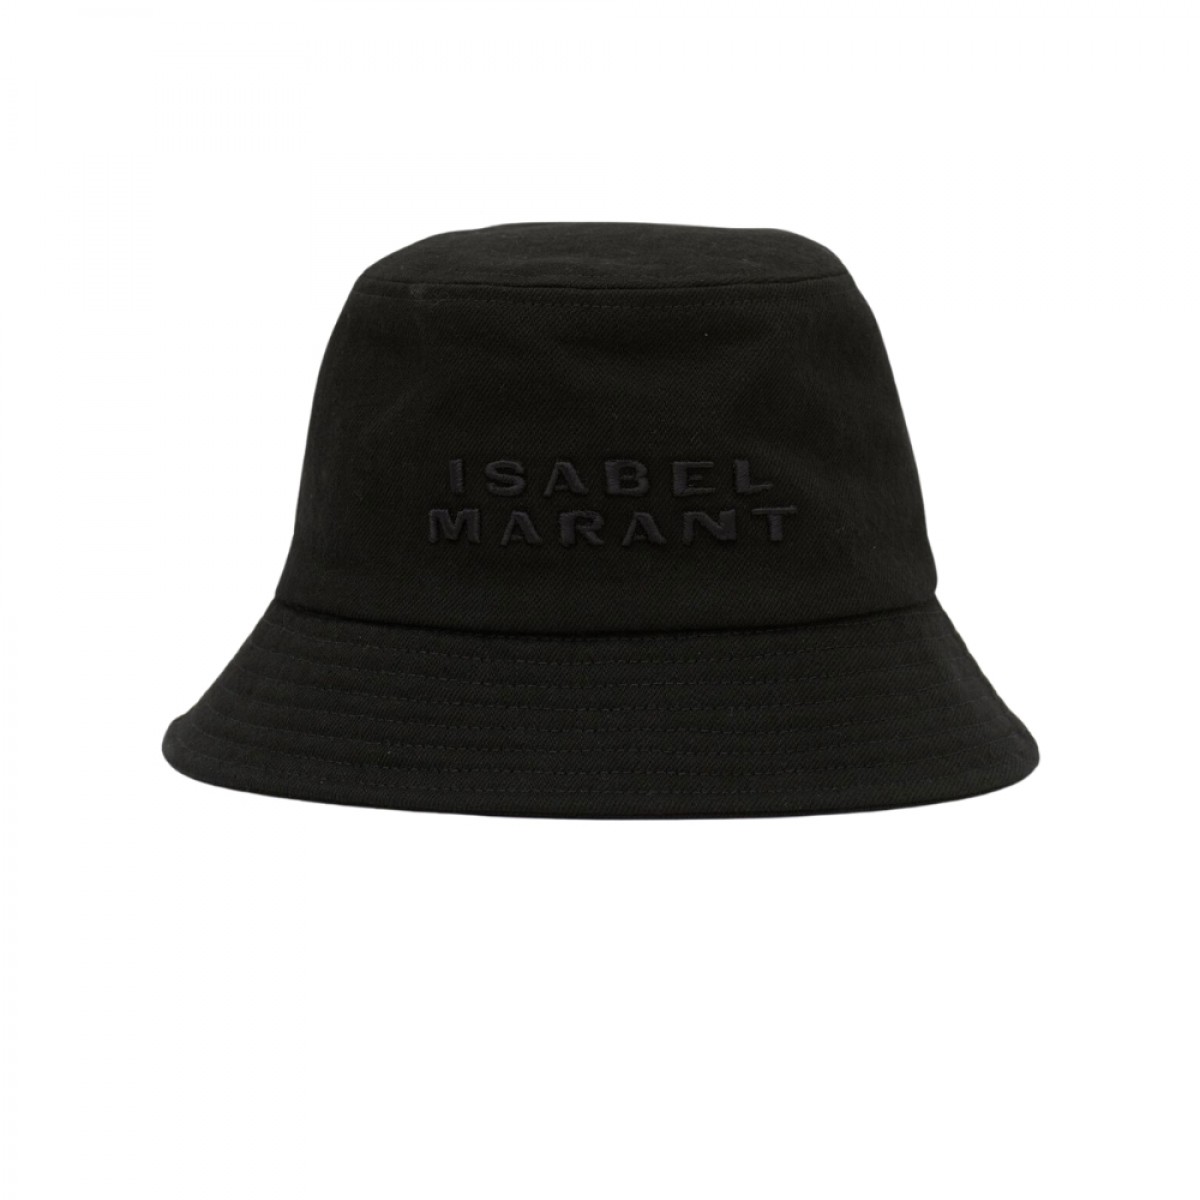 haley logo hat - black - front